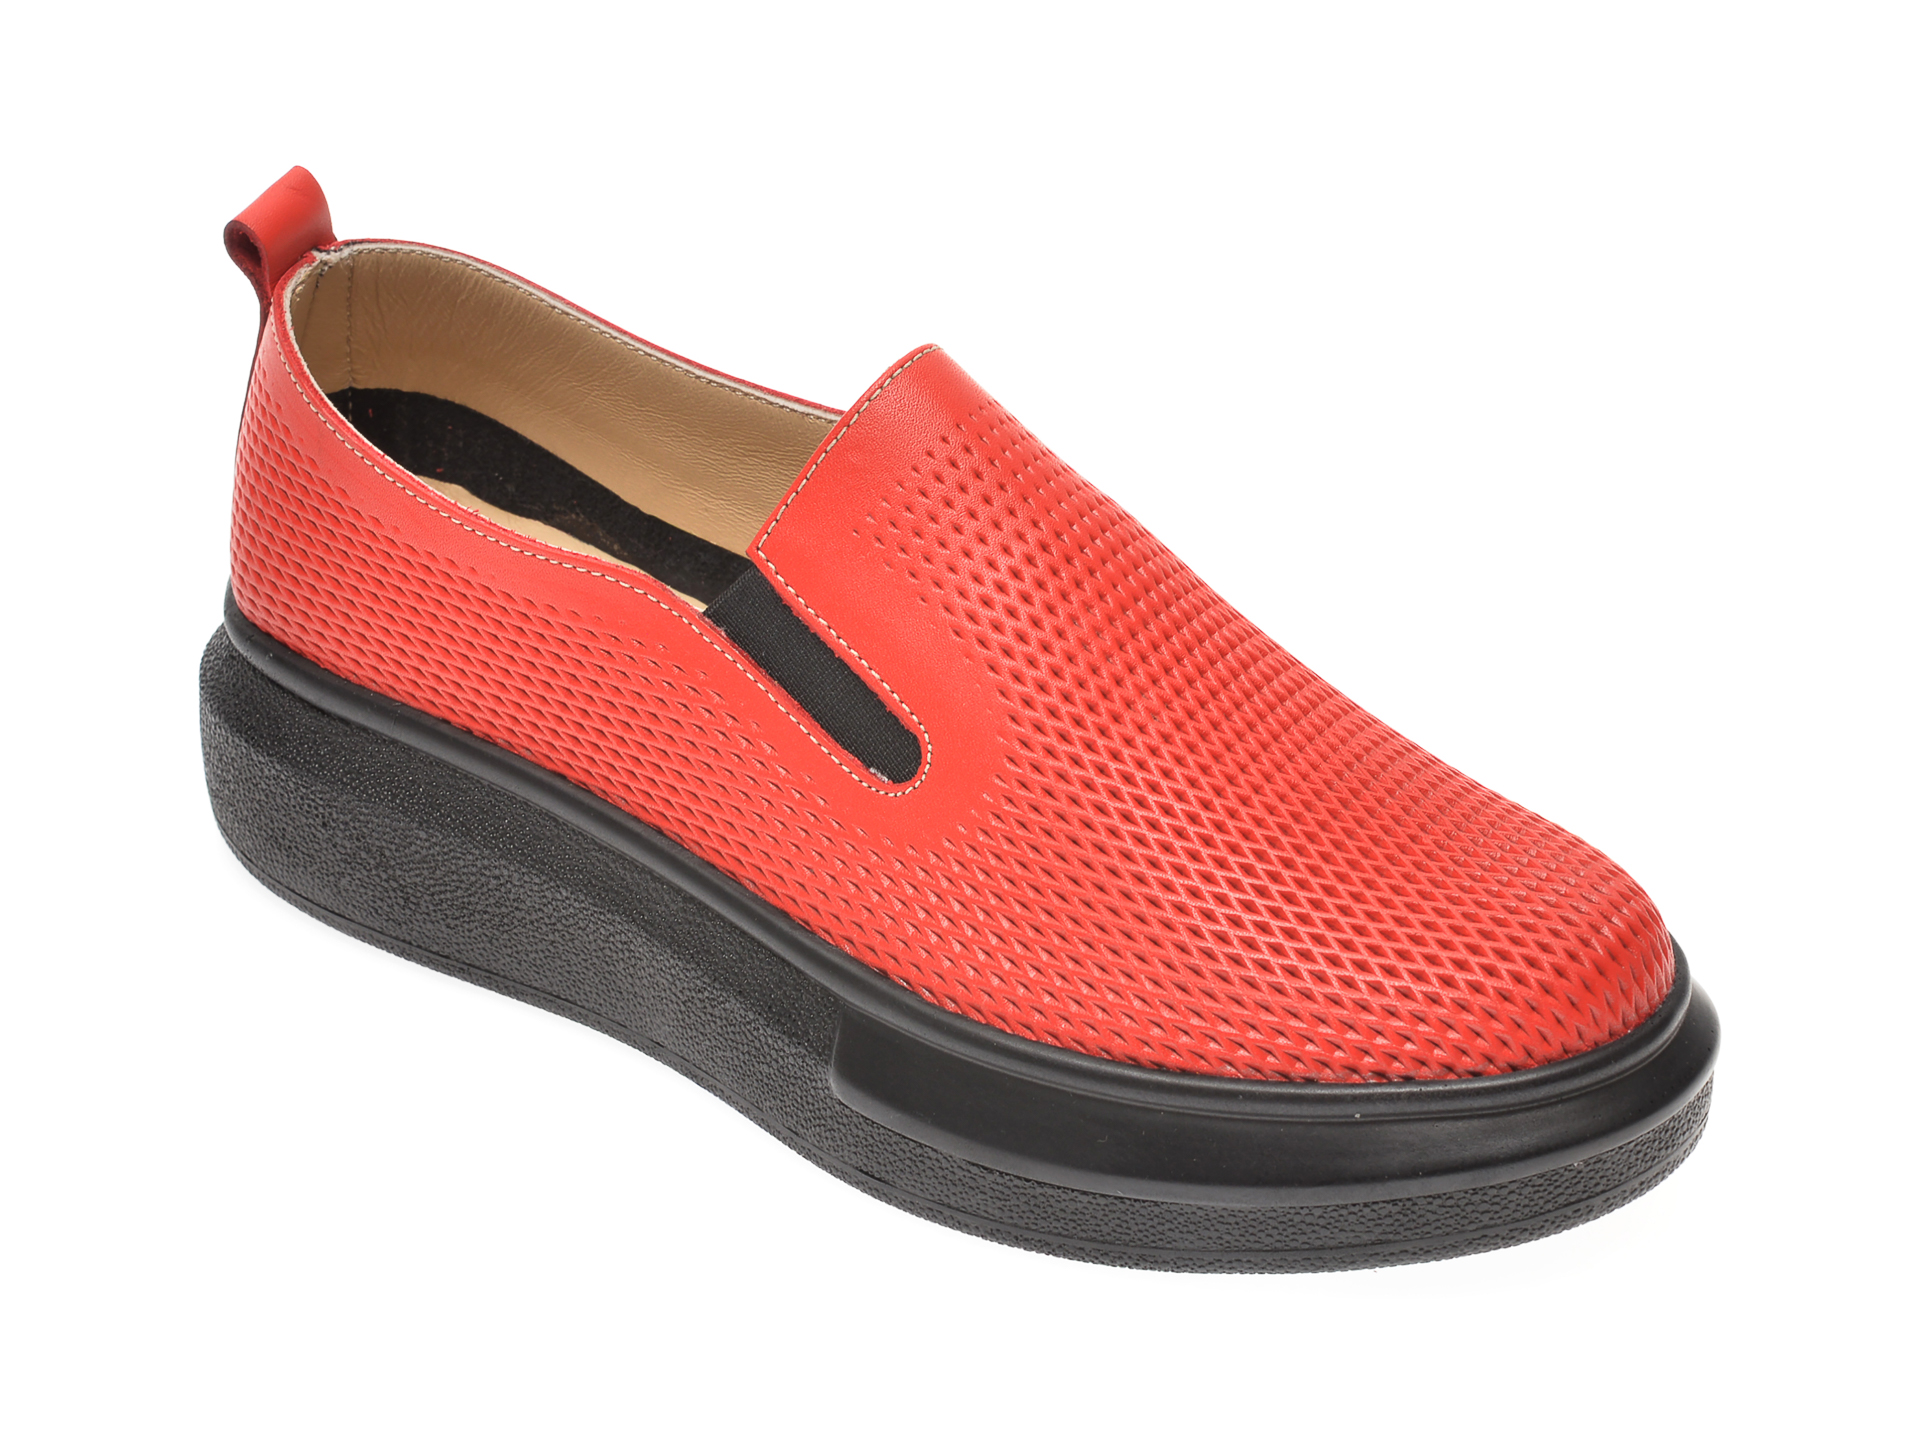 Pantofi PASS COLLECTION rosii, K92102, din piele naturala PASS COLLECTION imagine reduceri